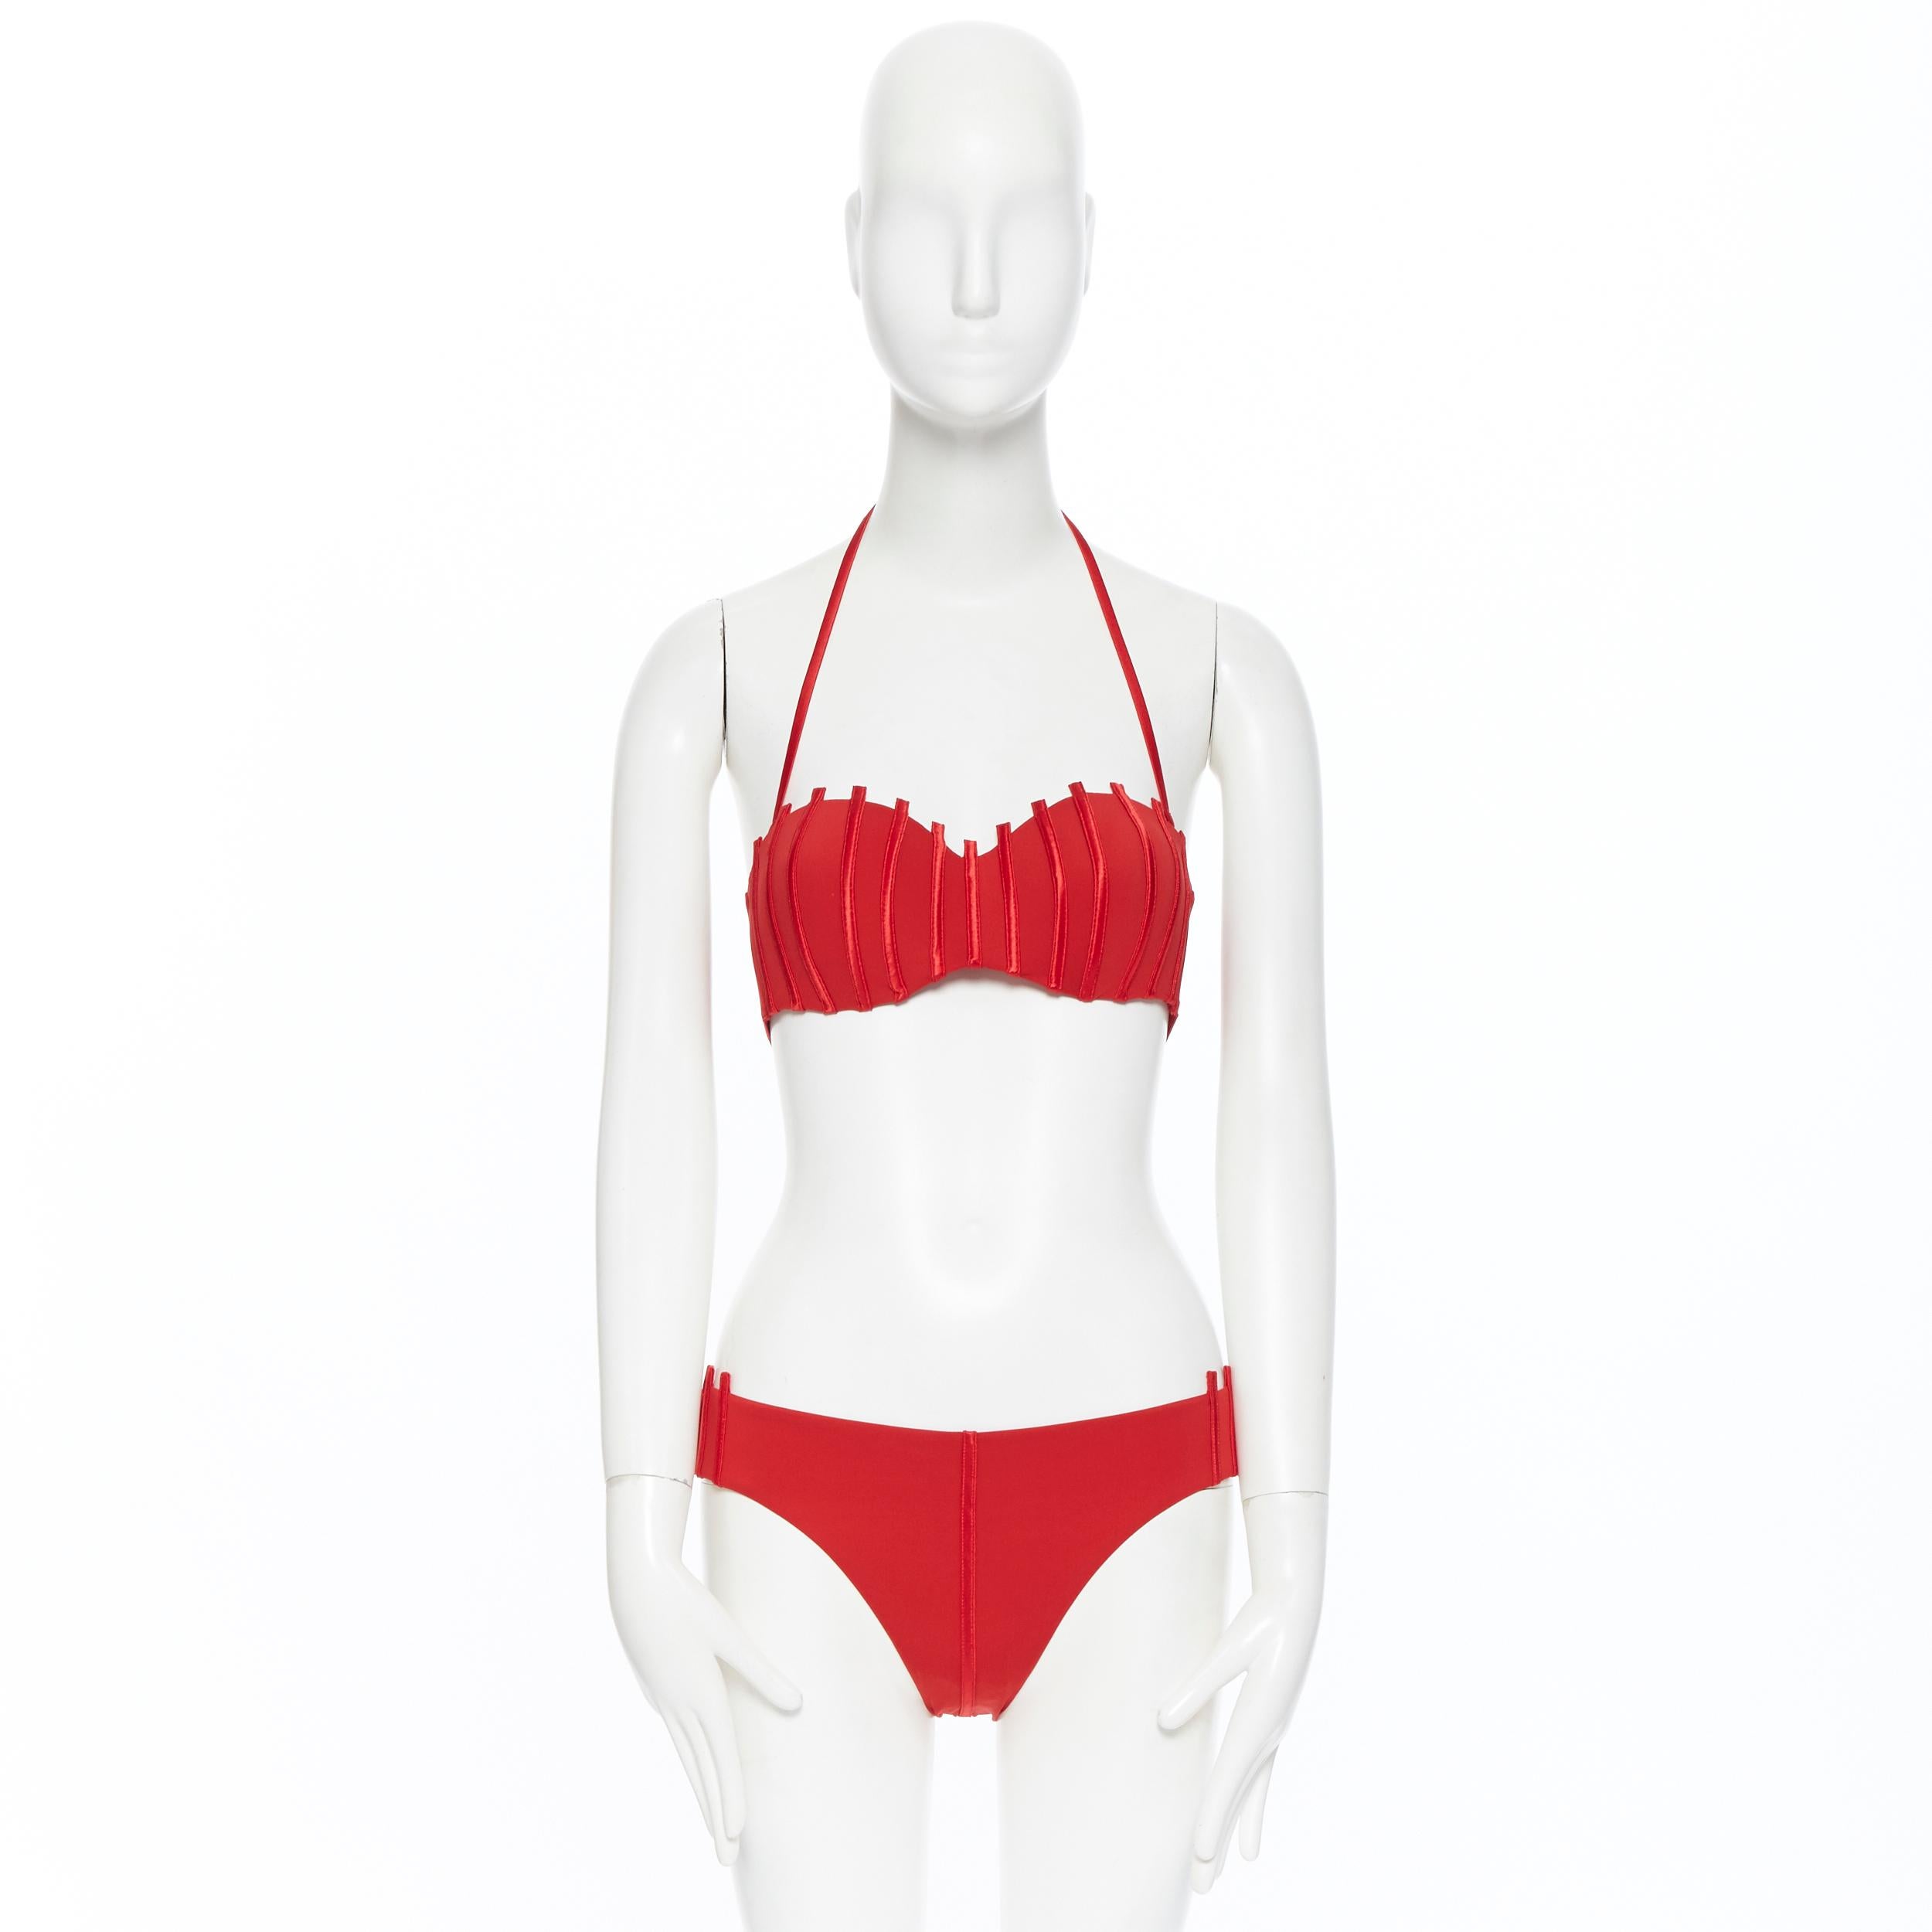 Gray new LA PERLA Graphique Couture red boned sheer body 2-pc bikini swimsuit IT44B M